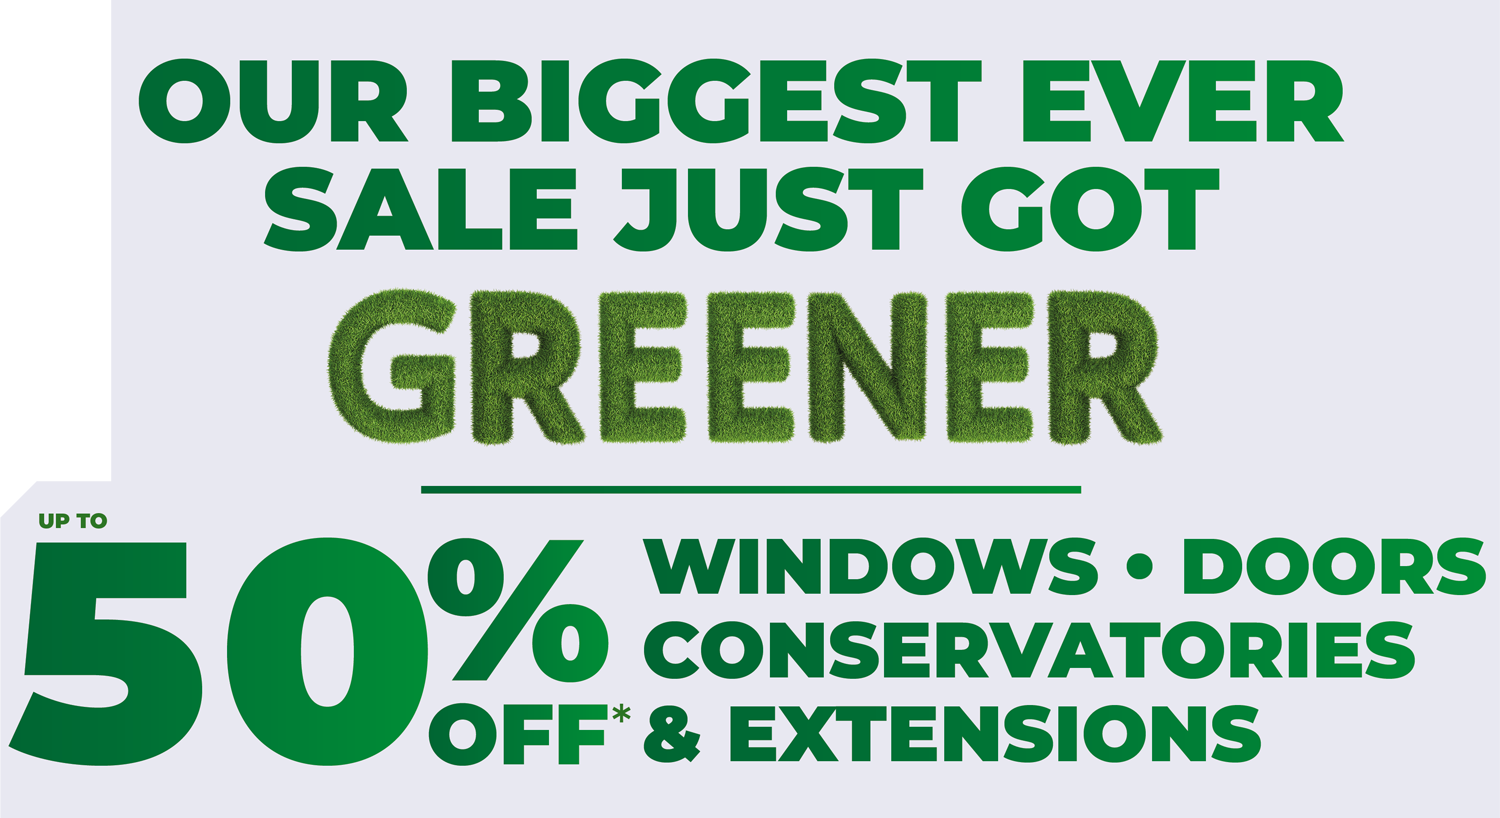 50% off windows, doors & conservatories